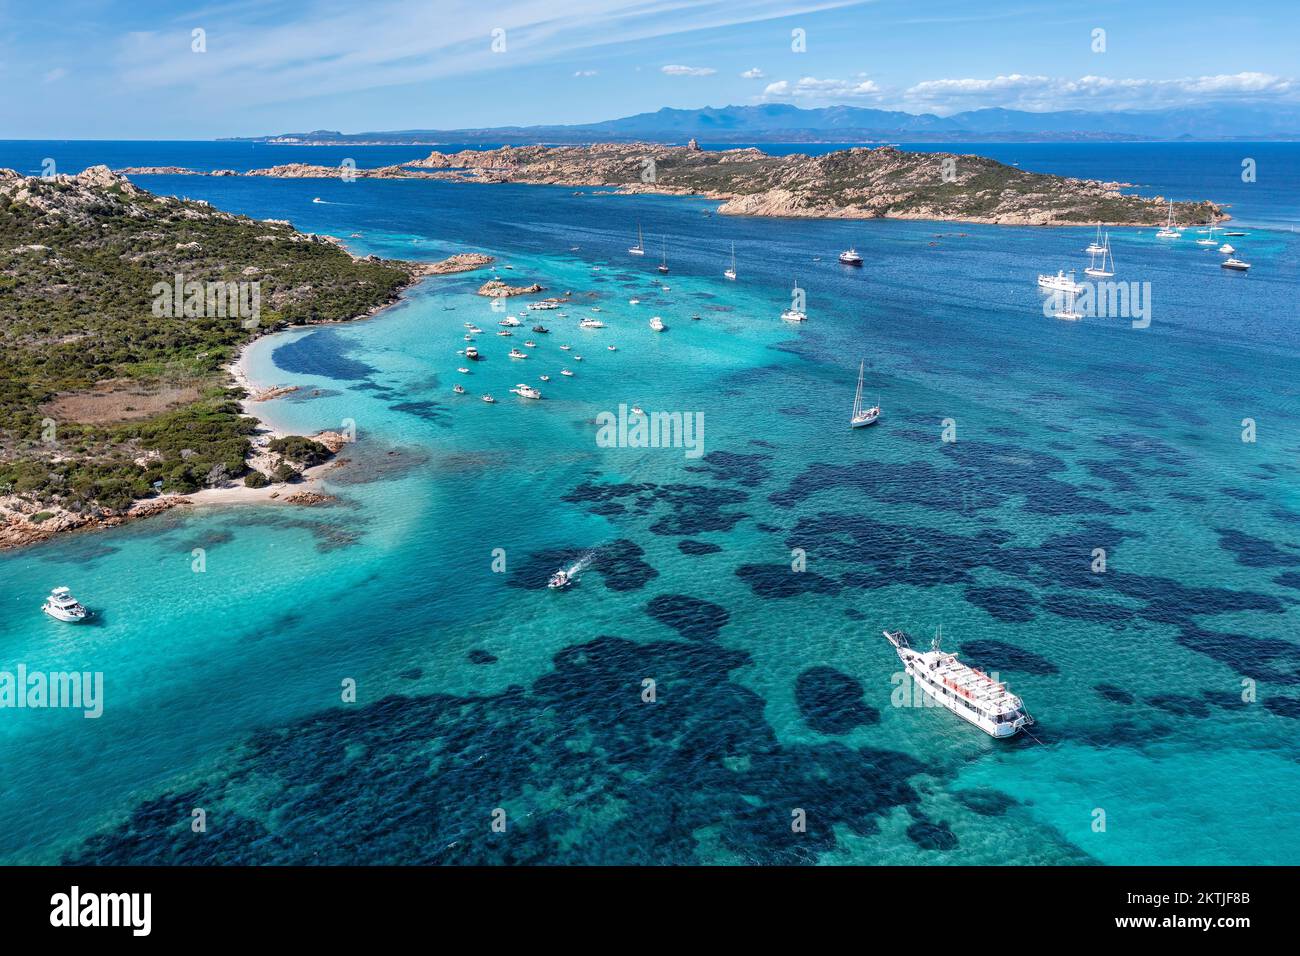 Vue aérienne des îles et des bateaux de touristes dans l'archipel de la Maddalena, Costa Smeralda, Sardaigne, Italie. Banque D'Images